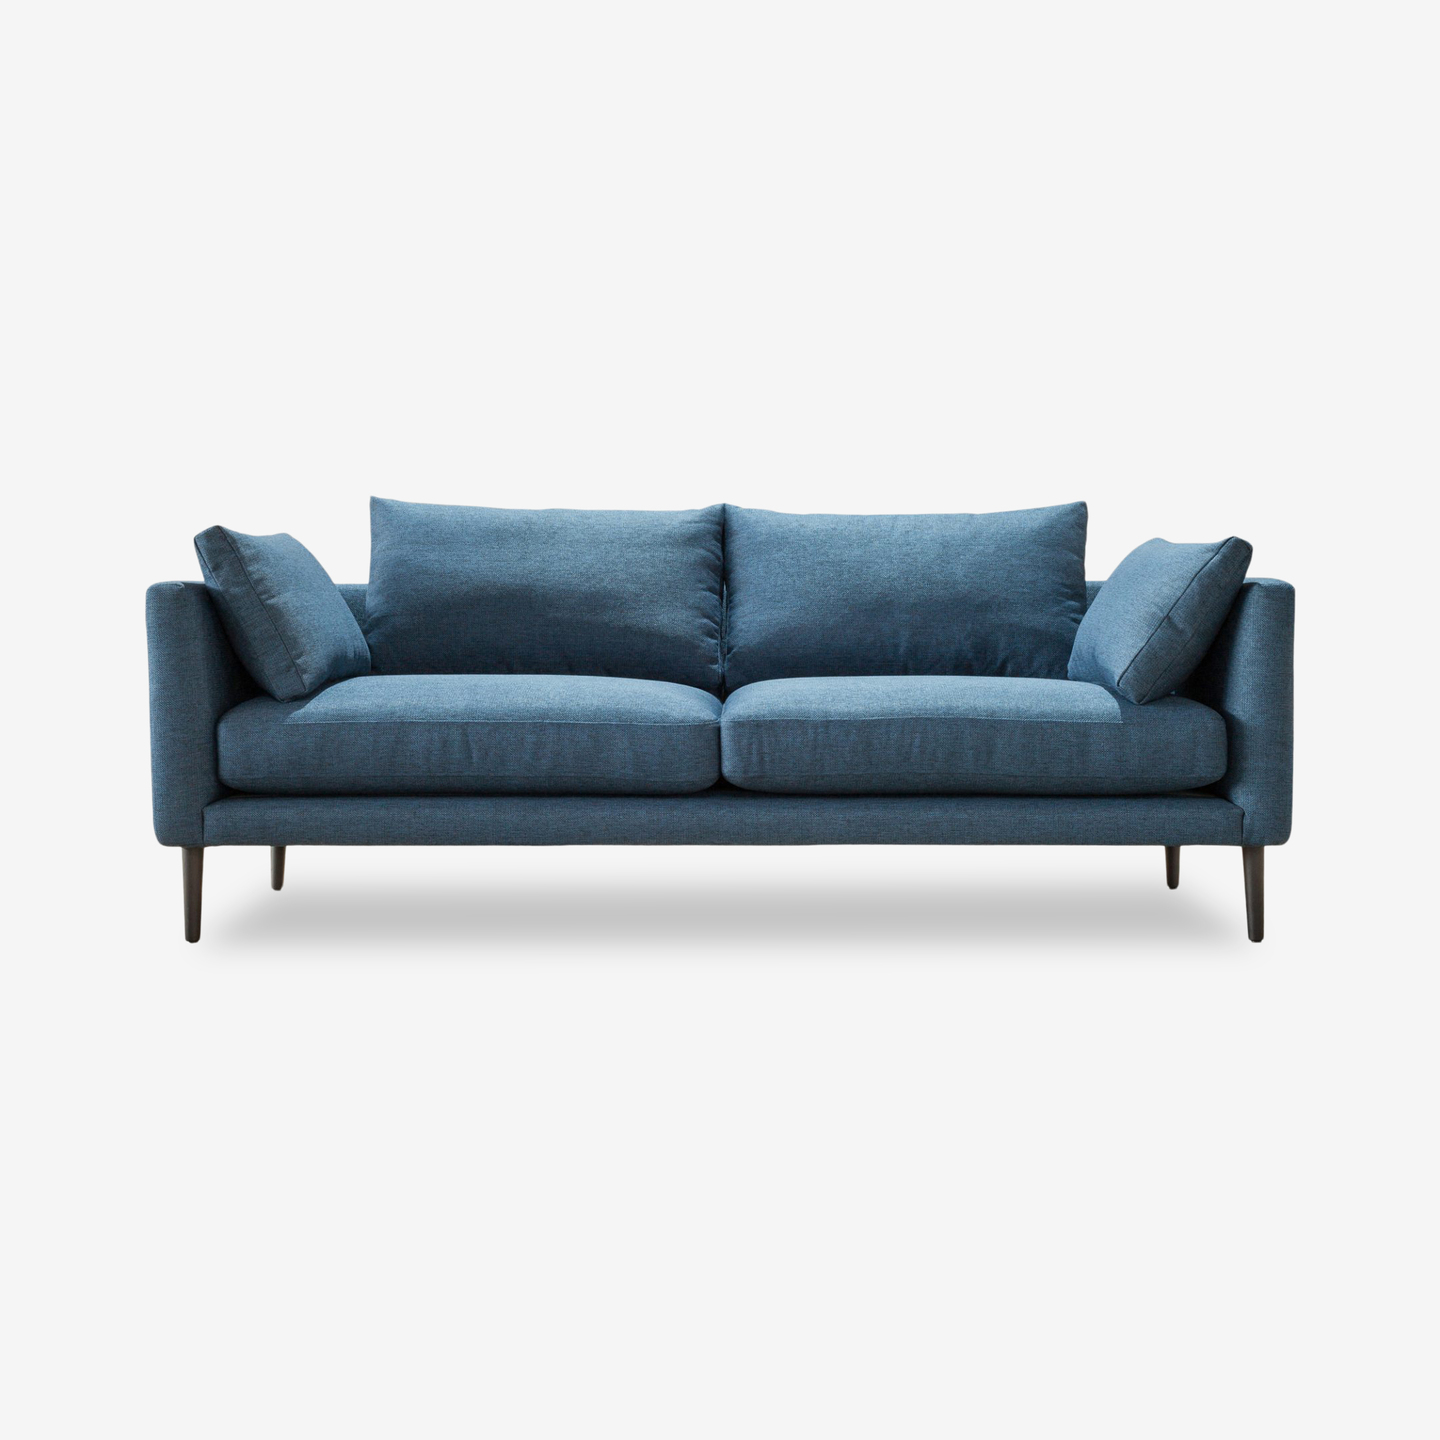 1083_Sierra-Sofa-Dark-Blue_Front_2020